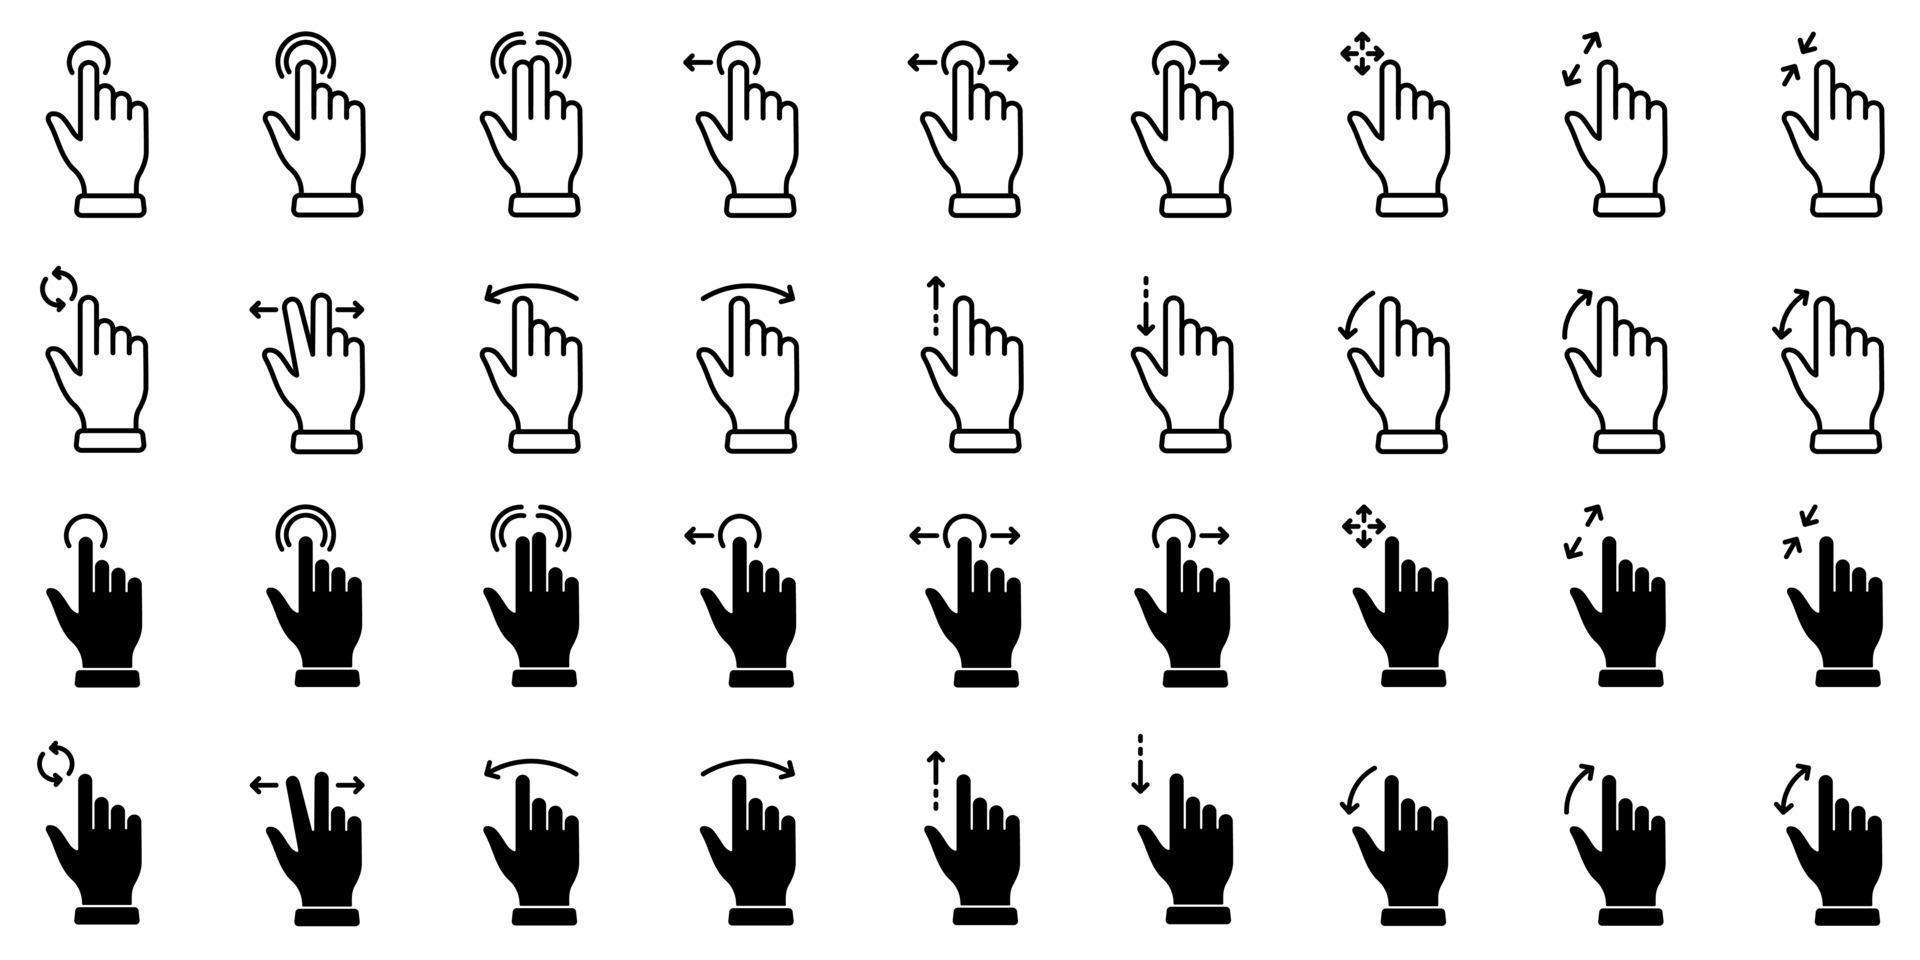 Streichen Sie mit der Hand mit dem Finger und ziehen Sie linear, Glyphenpiktogramm. Drücken Sie den Bildschirm zusammen, drehen Sie das Bildschirmumrisssymbol nach oben und unten. Gestenfolie. Gesten-Tap-Linie und Silhouette-Icon-Set. isolierte Vektorillustration. vektor